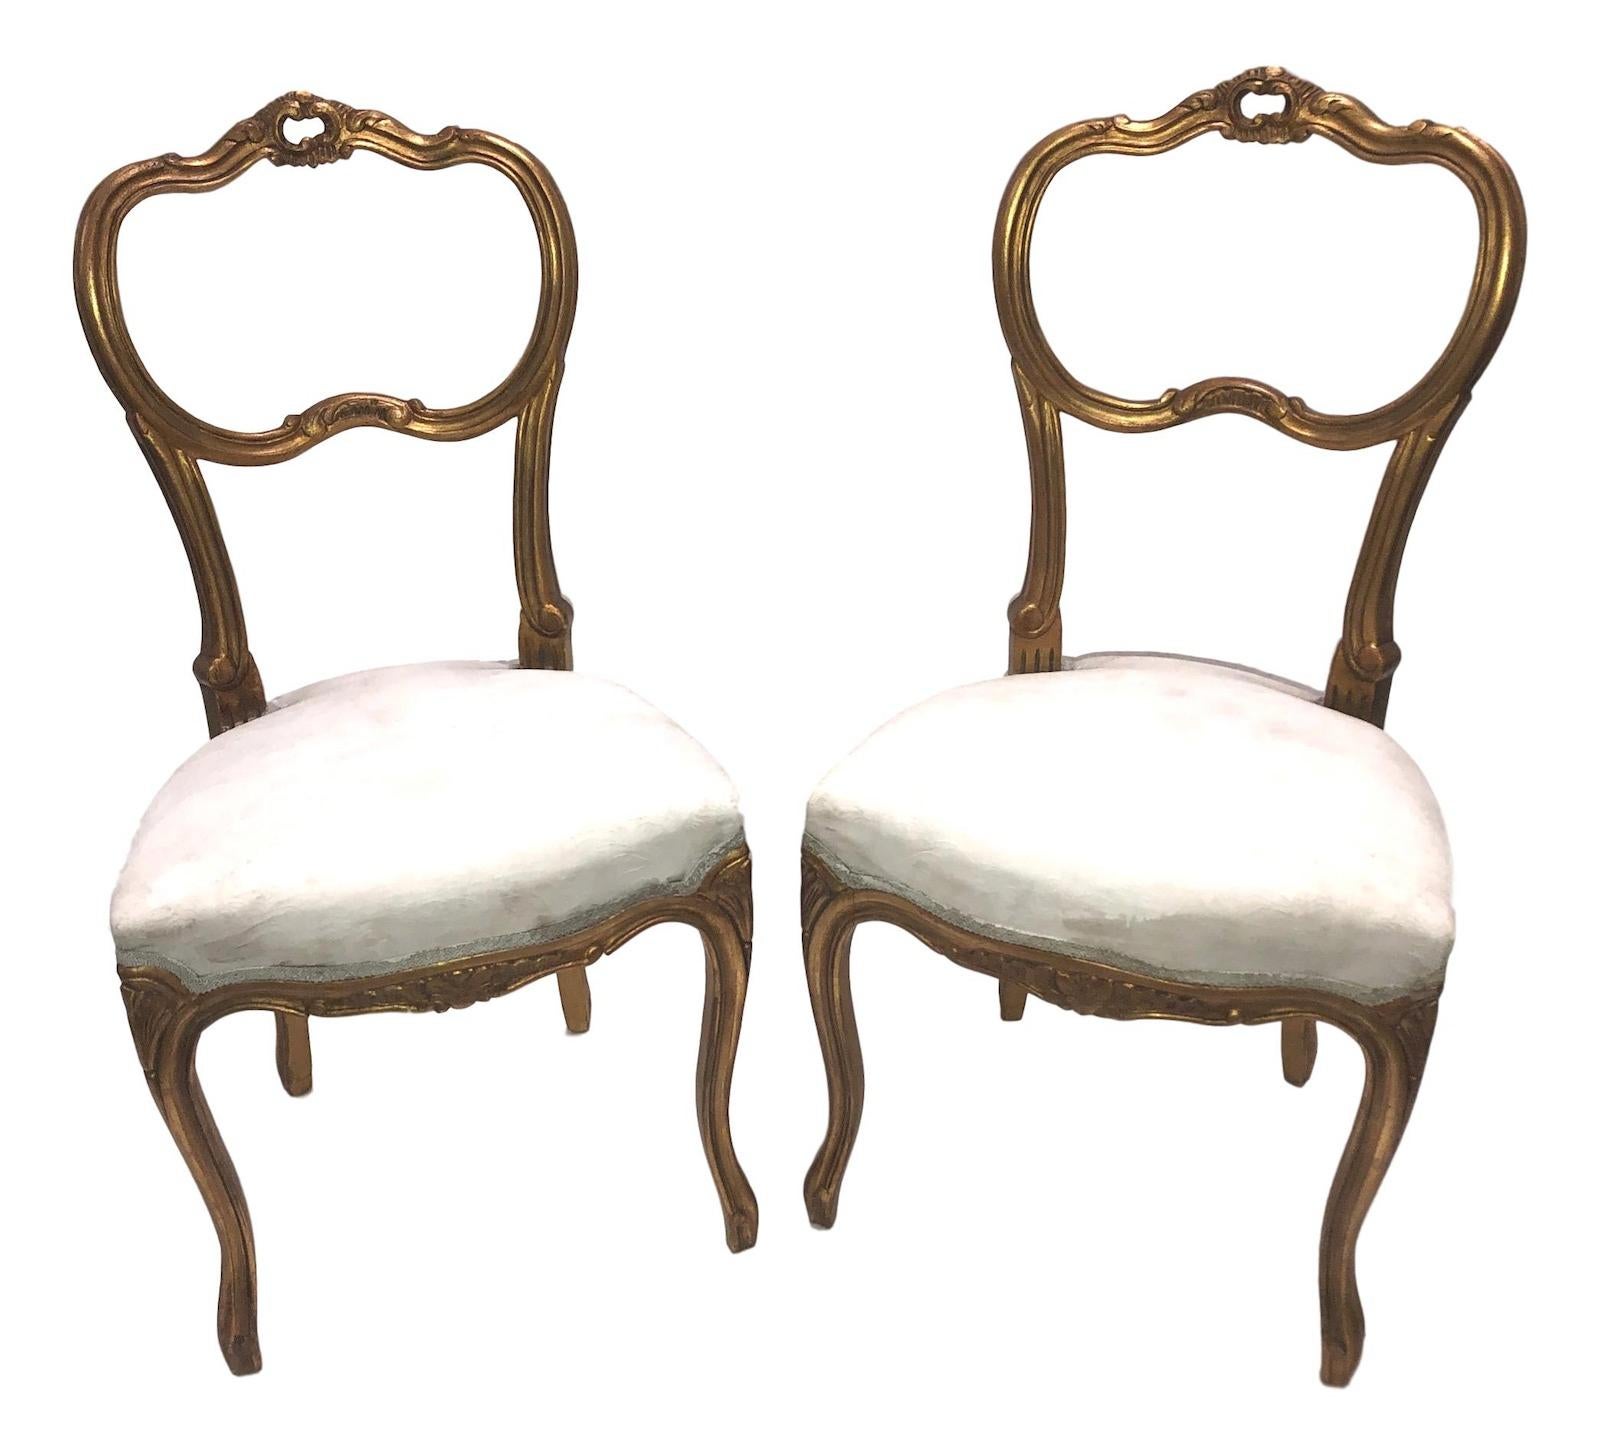 Il s'agit d'une belle paire de chaises suédoises anciennes en bois doré, datant d'environ 1920.
Le bois doré est d'une couleur magnifique, chaque chaise présente une rampe supérieure à crête sculptée en coquillage avec des supports à boucle